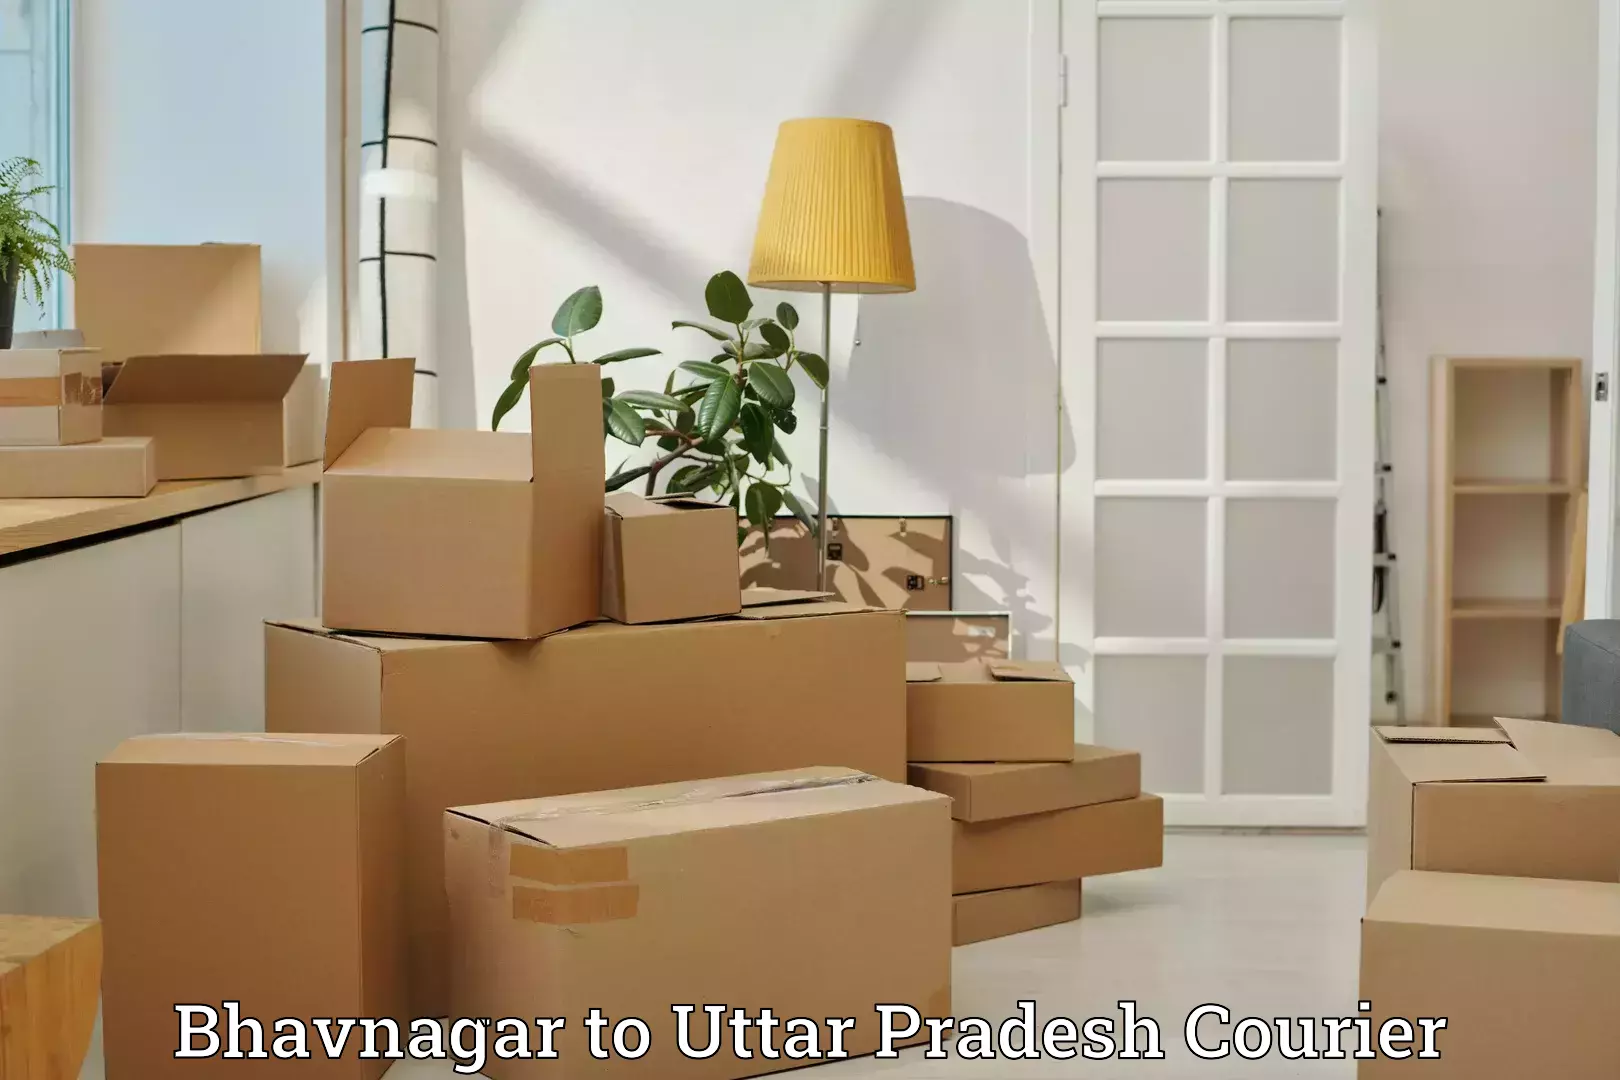 Baggage transport network Bhavnagar to Uttar Pradesh